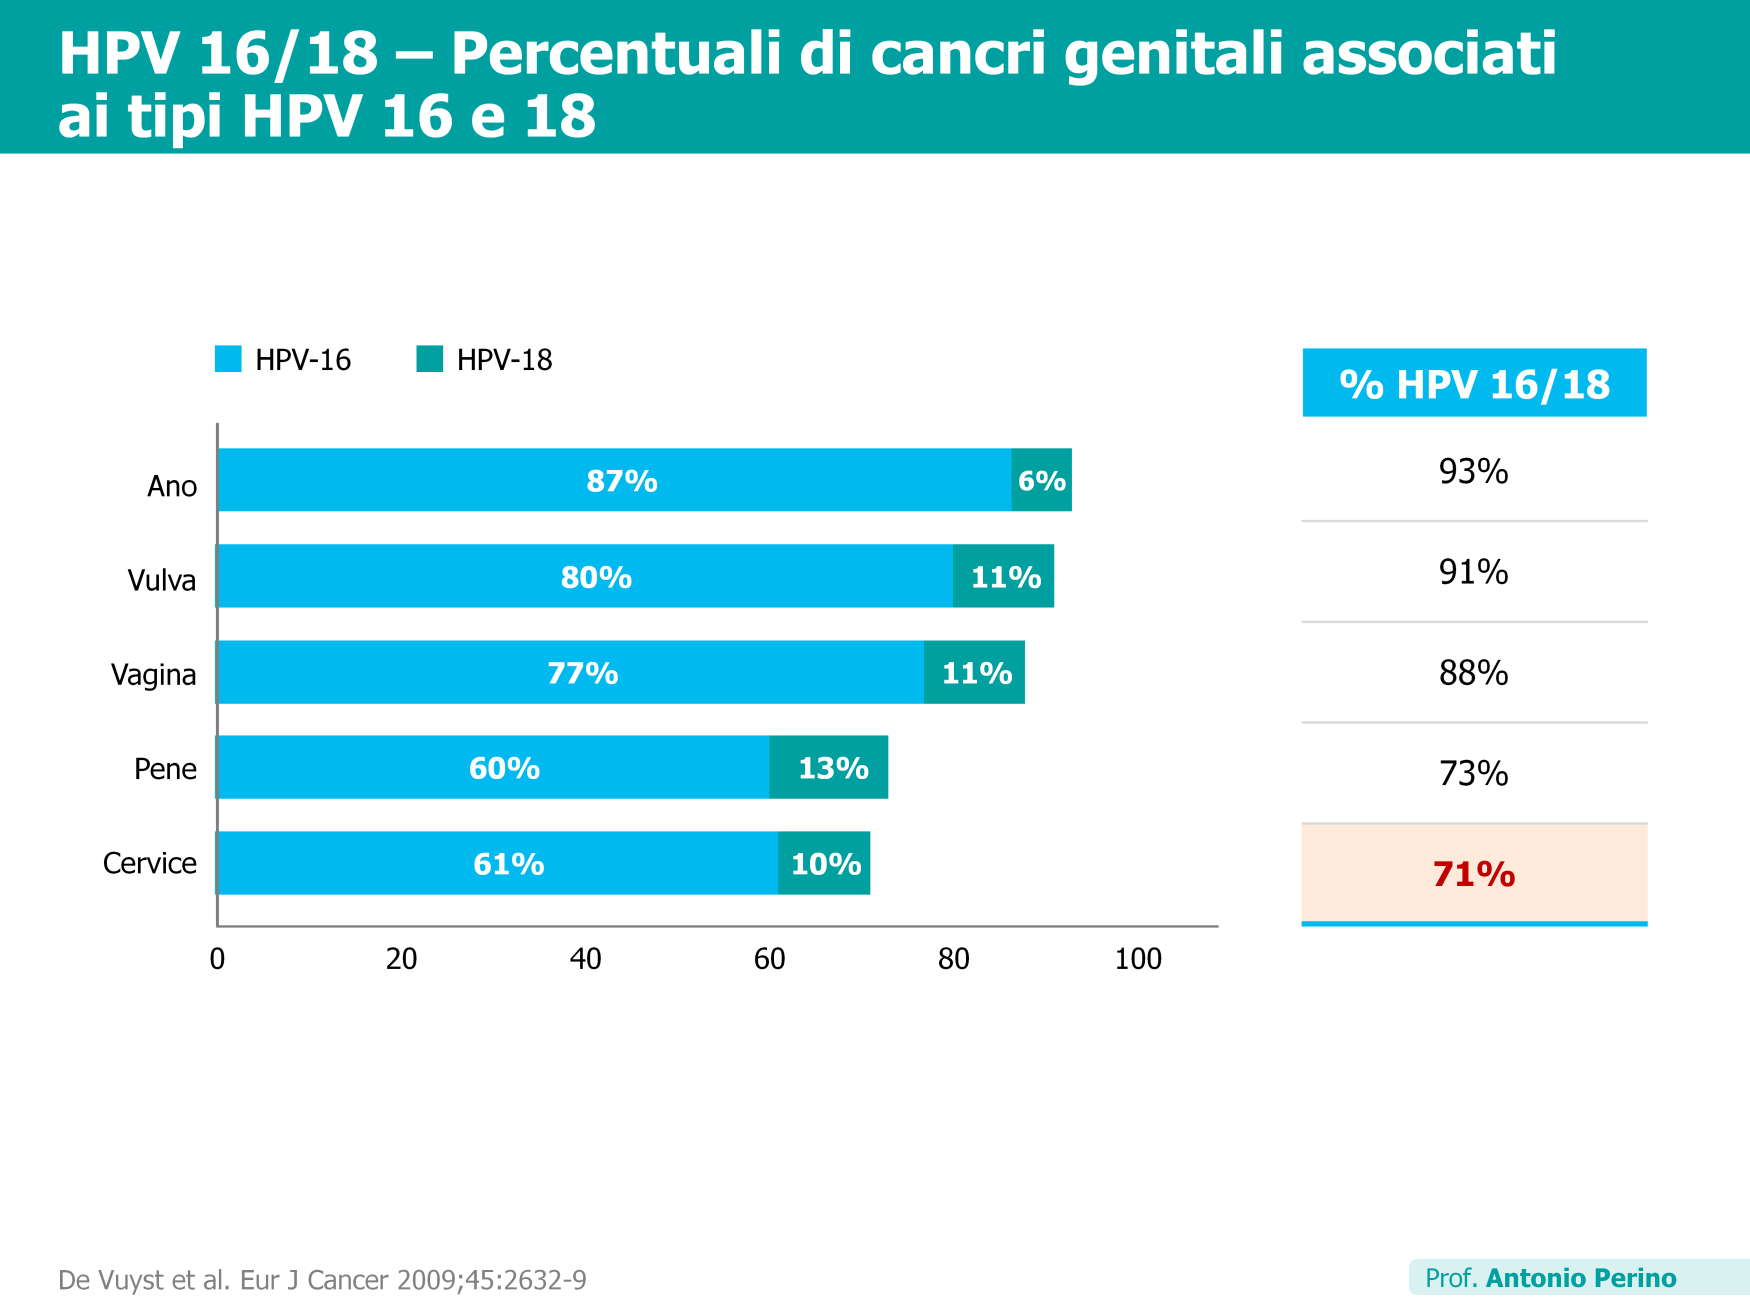 La maggior parte delle patologie HPV-correlate è causata dal tipo HPV 16, seguito dal tipo 18 che comunque interessa un numero